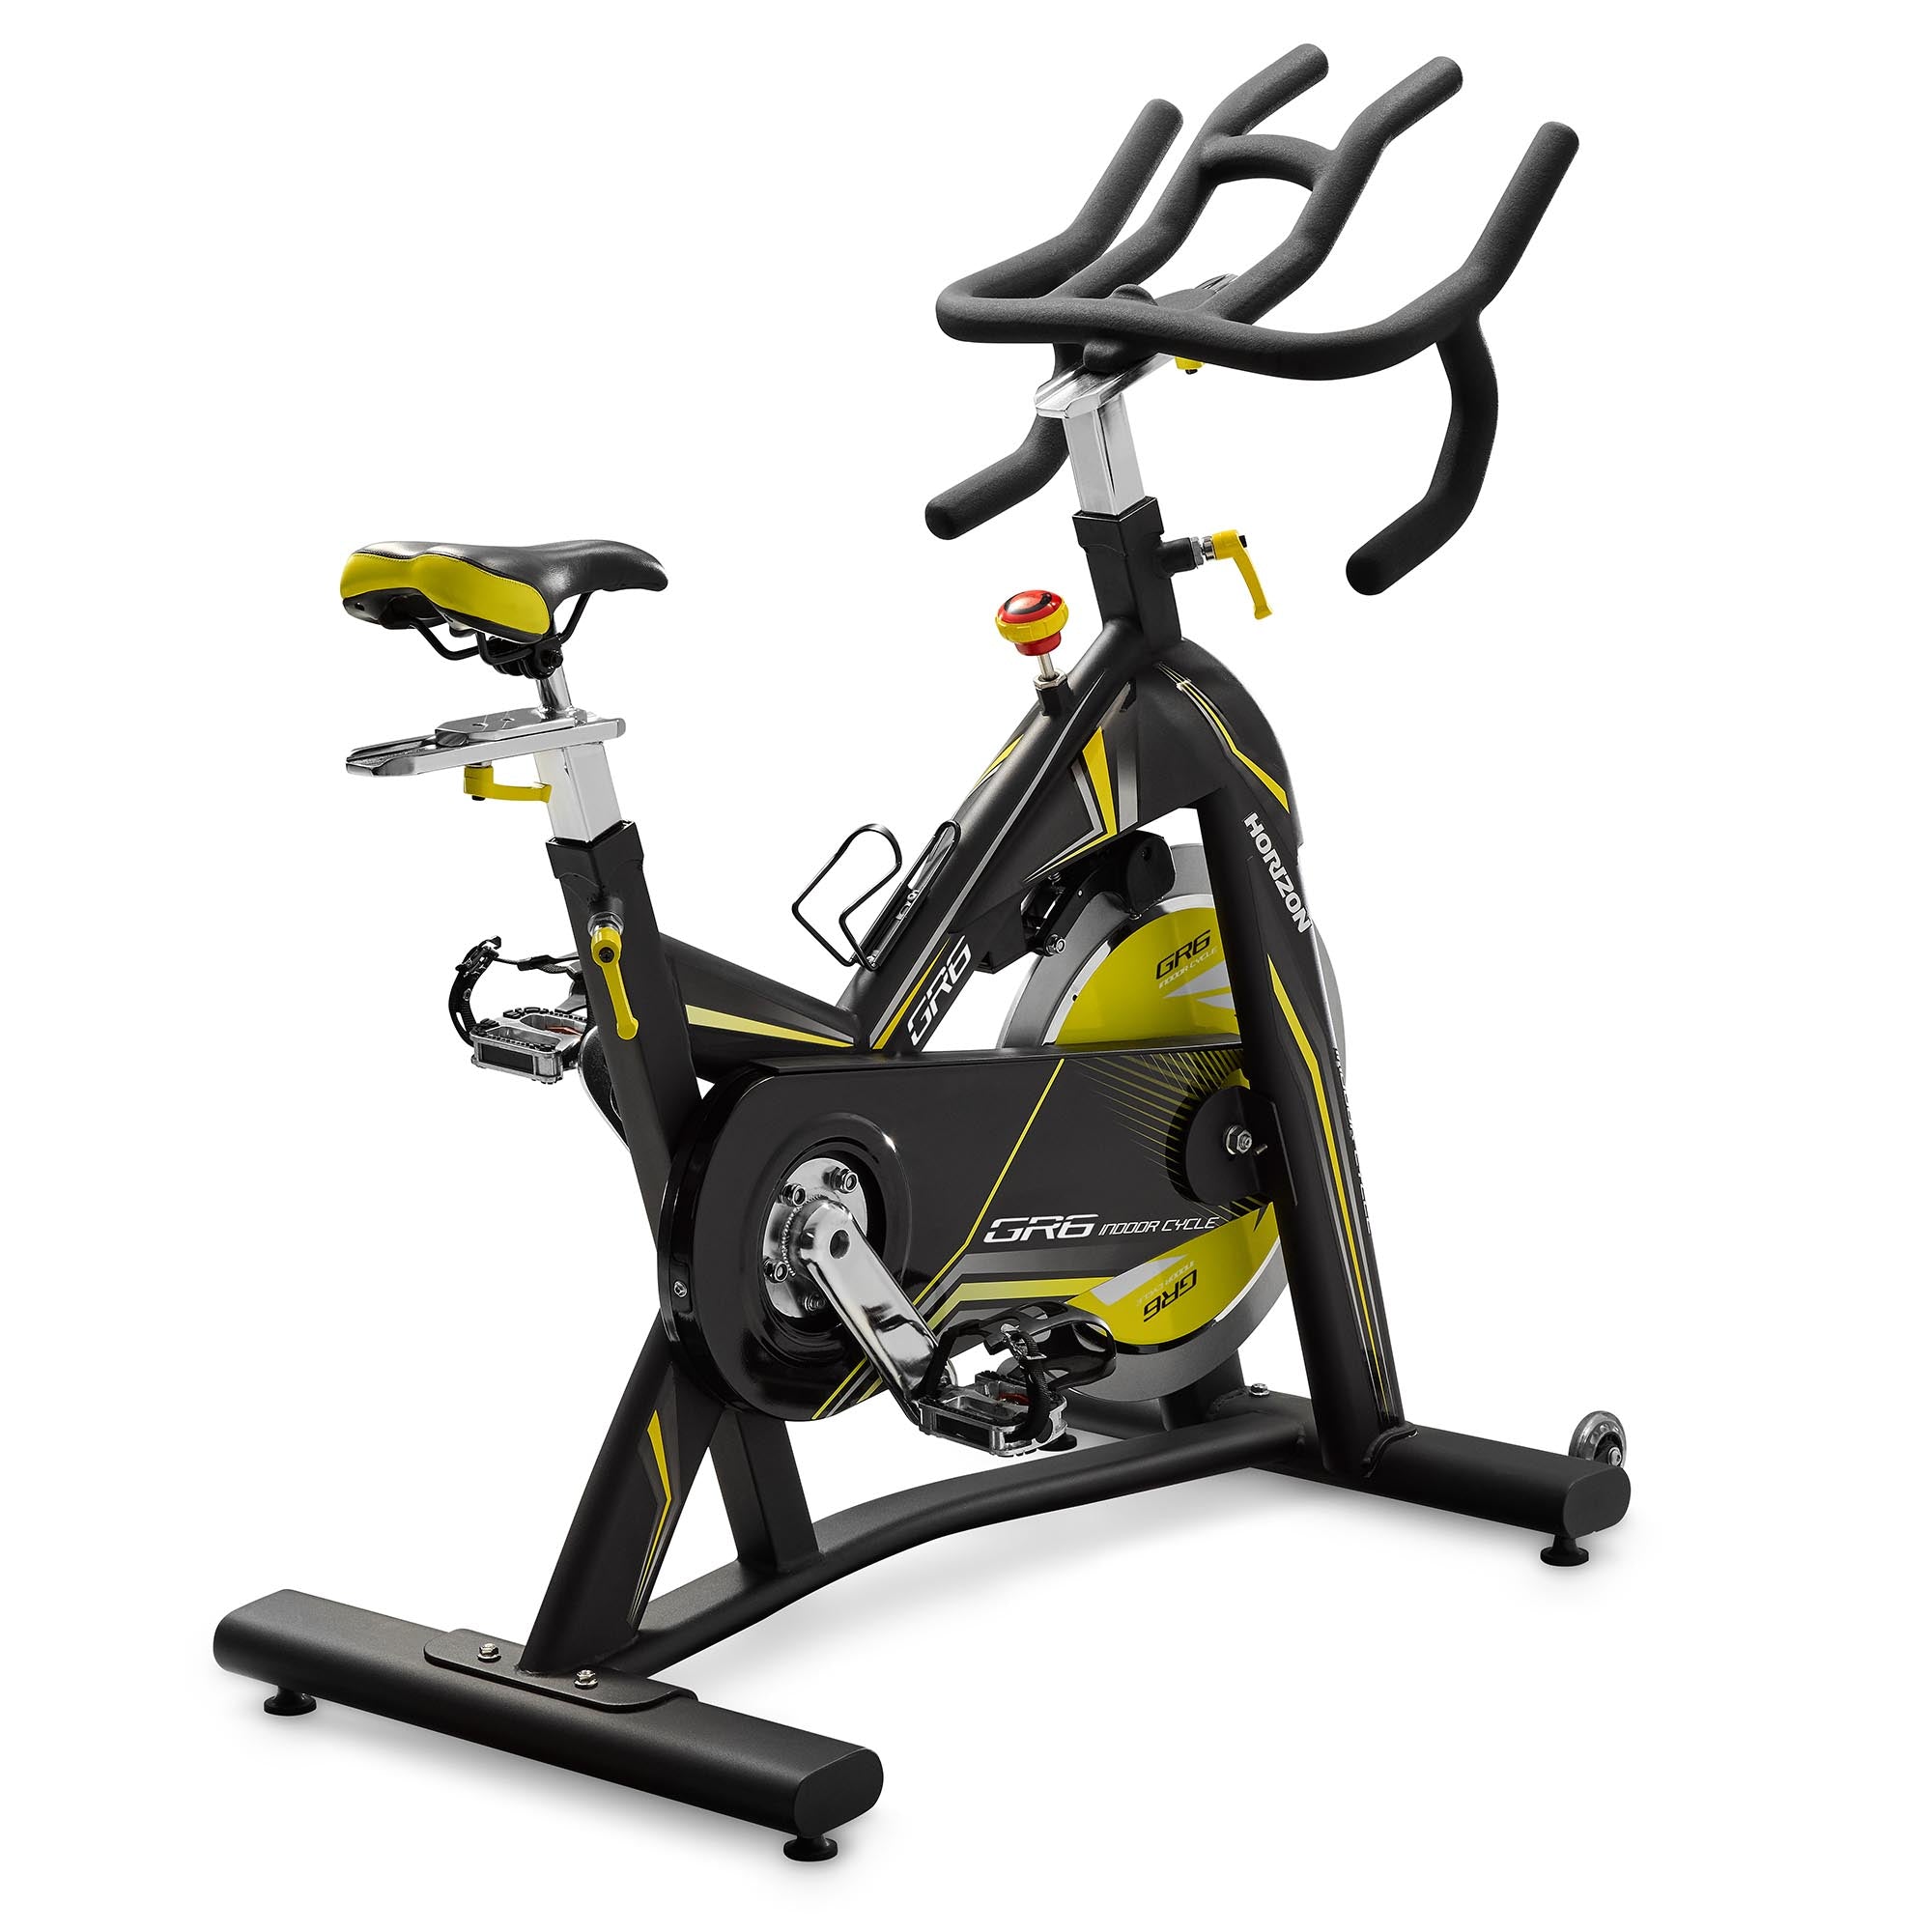 Horizon Fitness GR6 Indoor Cycle